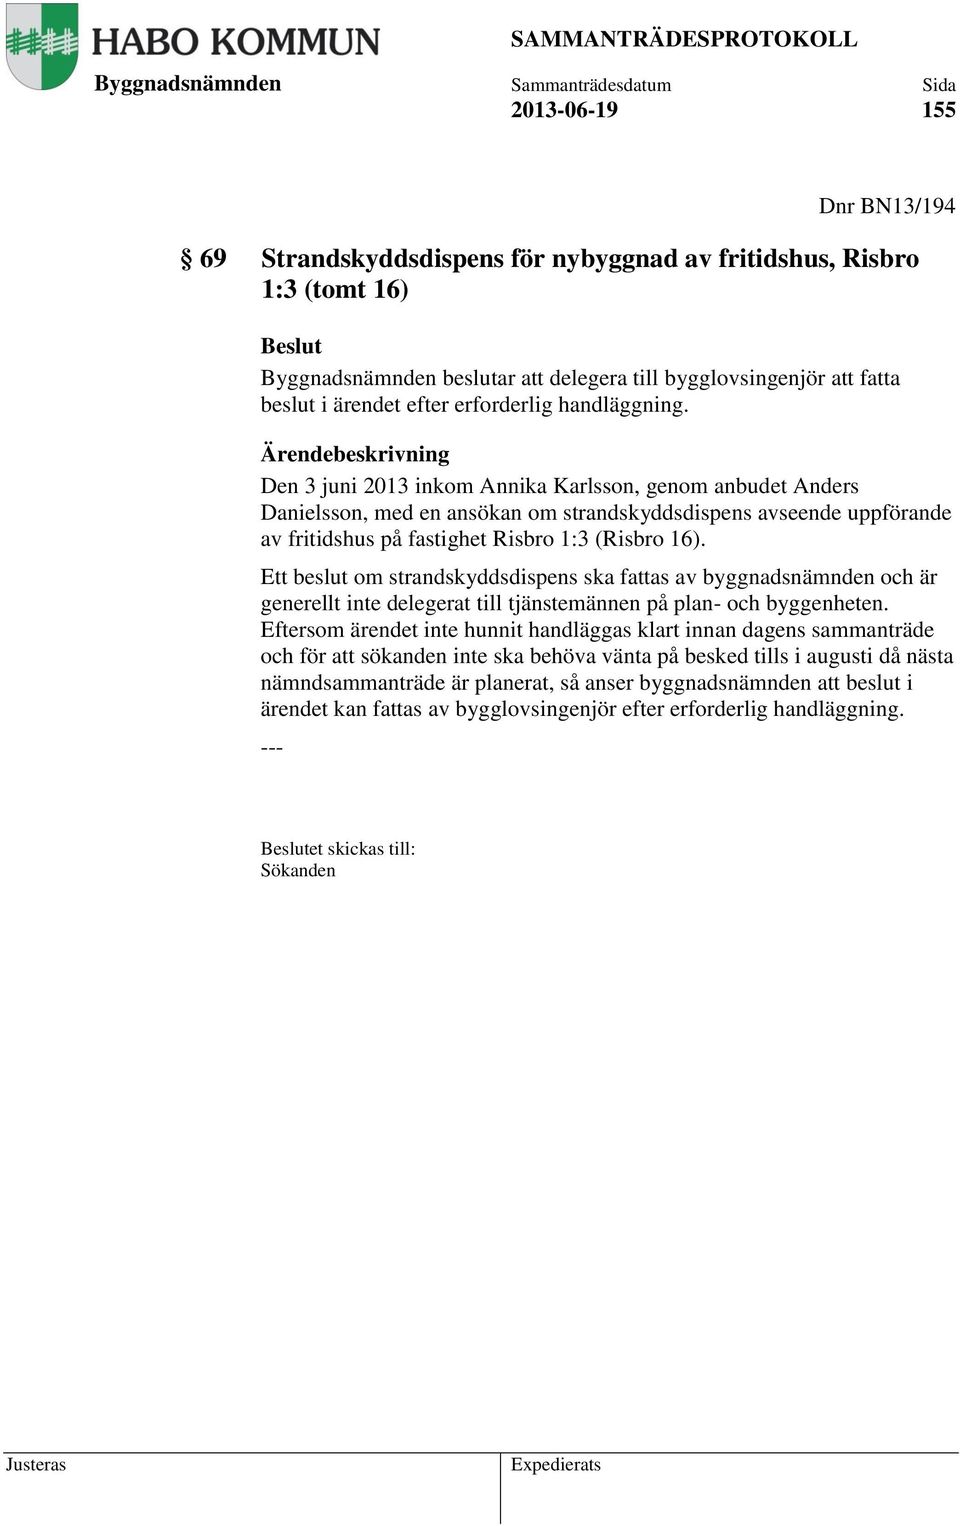 Ärendebeskrivning Den 3 juni 2013 inkom Annika Karlsson, genom anbudet Anders Danielsson, med en ansökan om strandskyddsdispens avseende uppförande av fritidshus på fastighet Risbro 1:3 (Risbro 16).